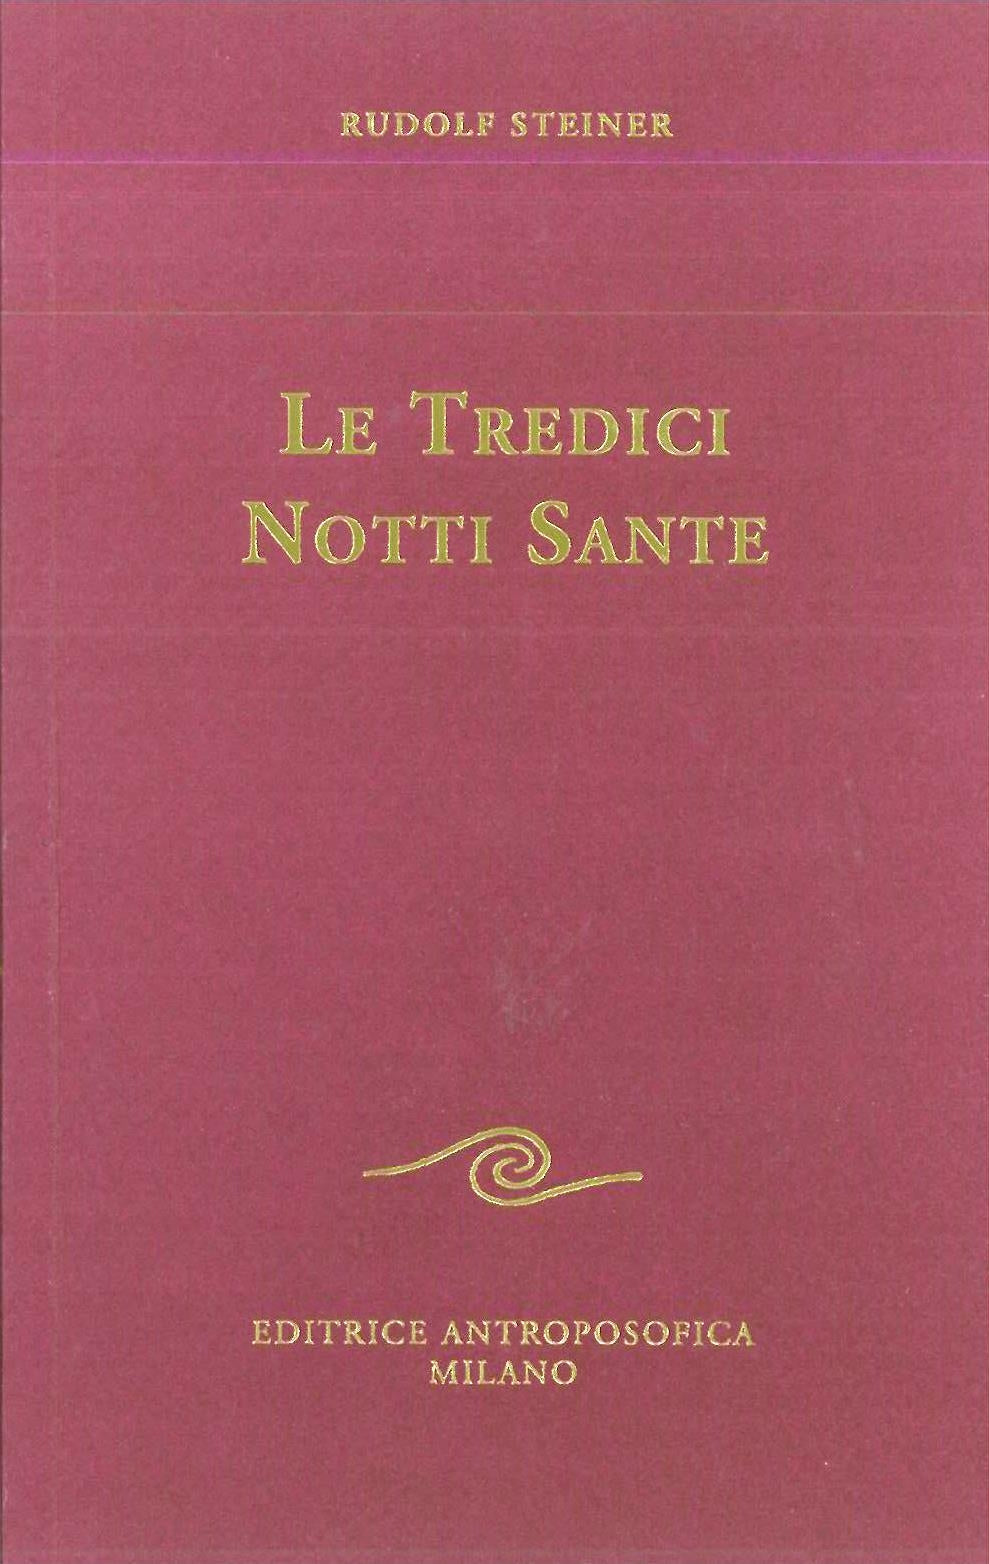 Le tredici notti sante - Rudolf Steiner